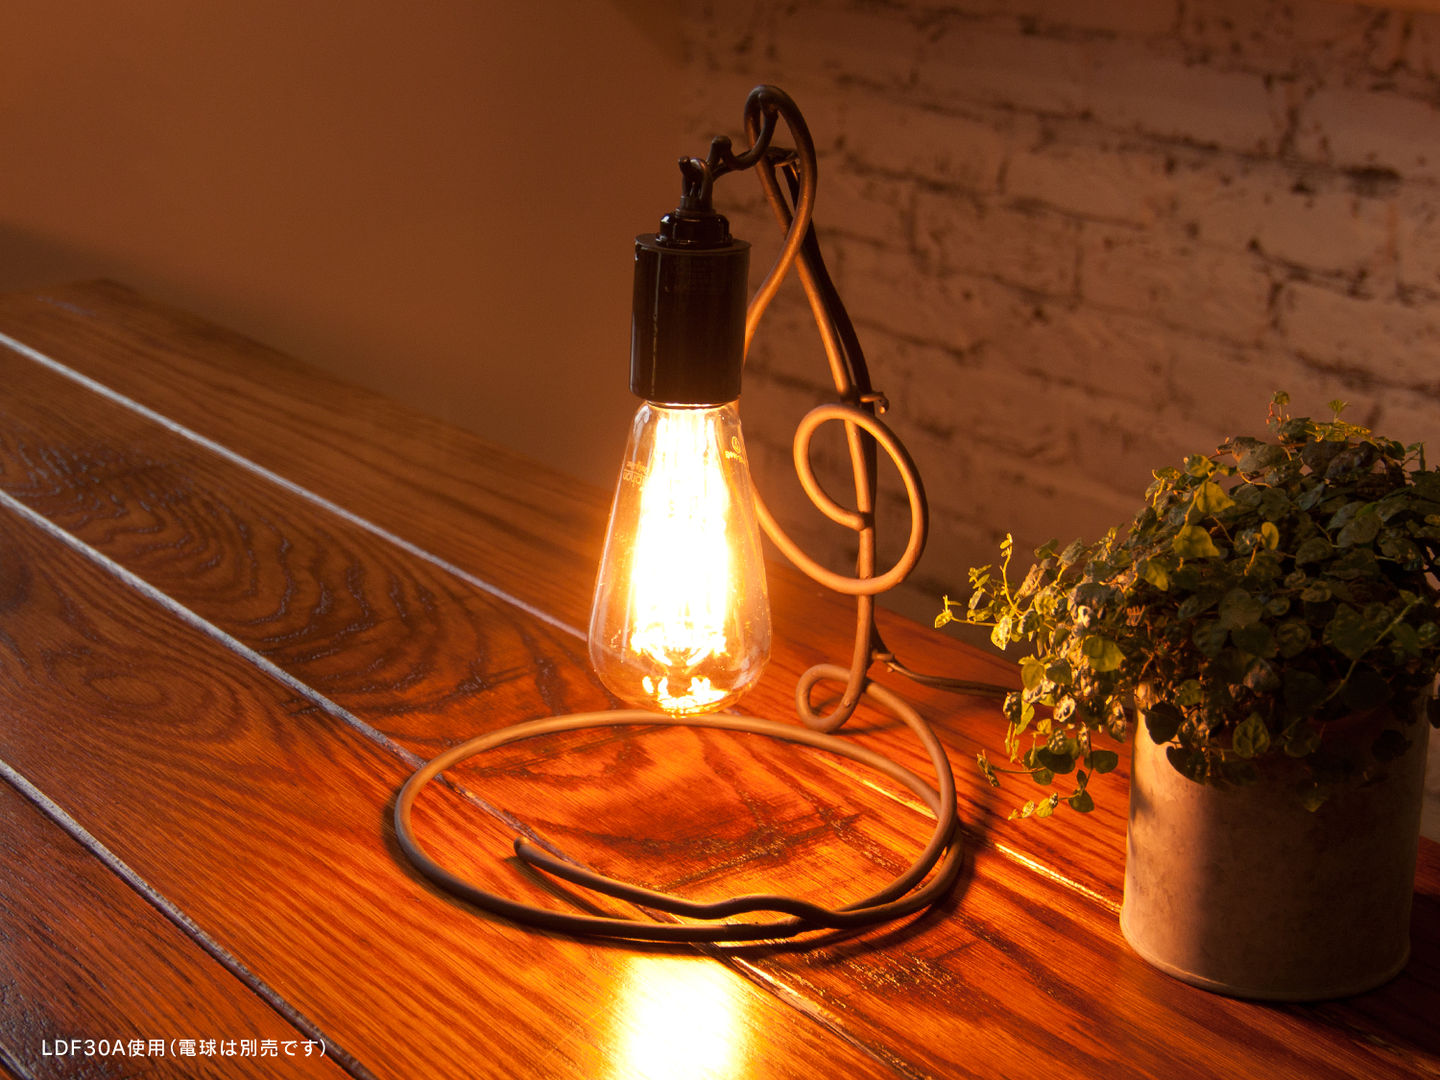 アイアンランプシェード「シルシェード」 Handmade Iron Lamp Shade, Only One Only One Eclectic style bedroom Iron/Steel Lighting